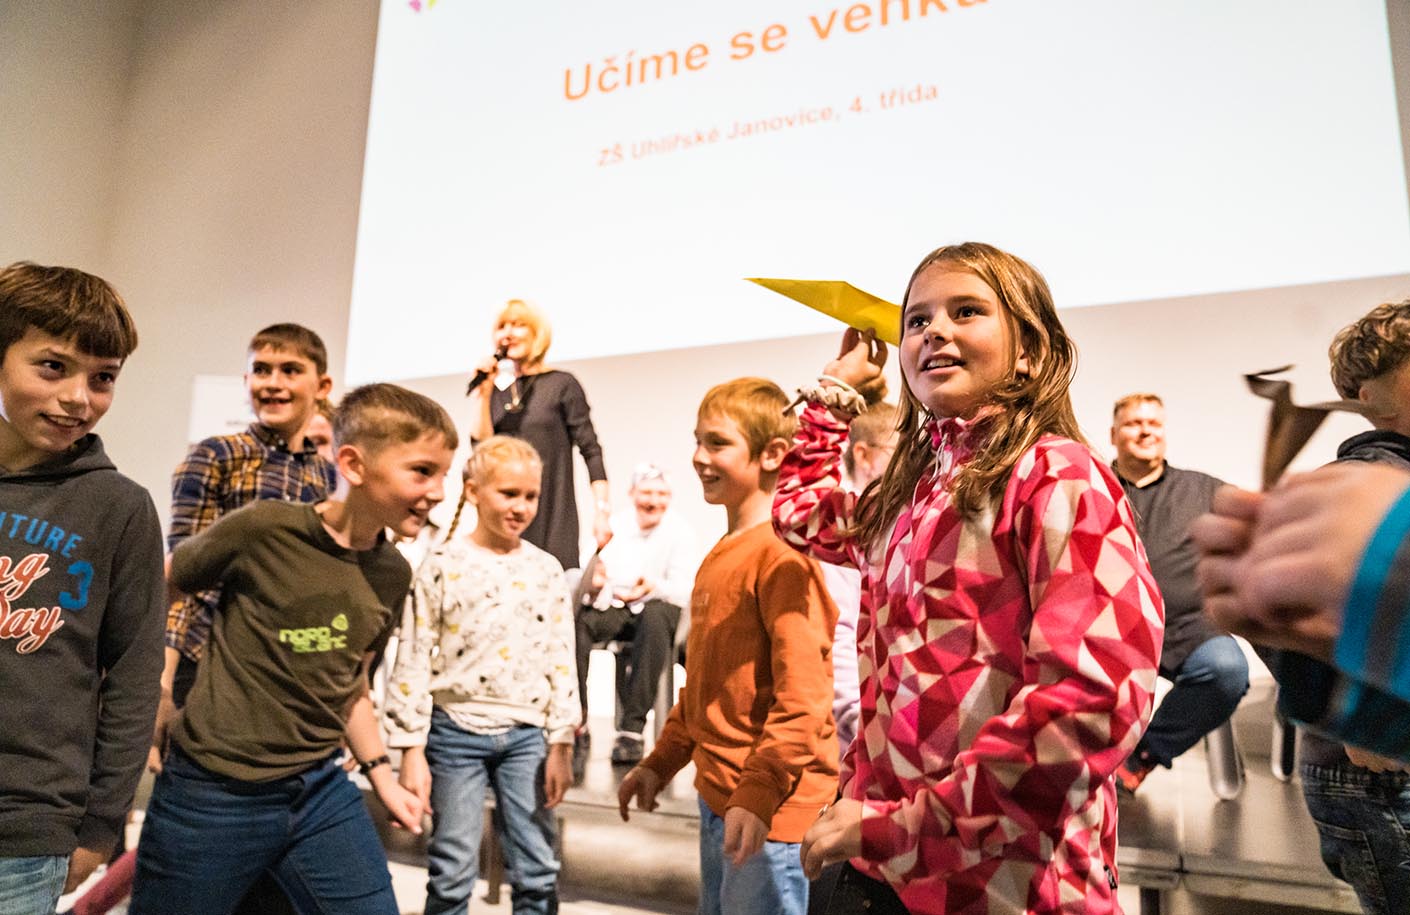 Děti z Kutnohorska vyslaly do sálu vlaštovky s přáním.